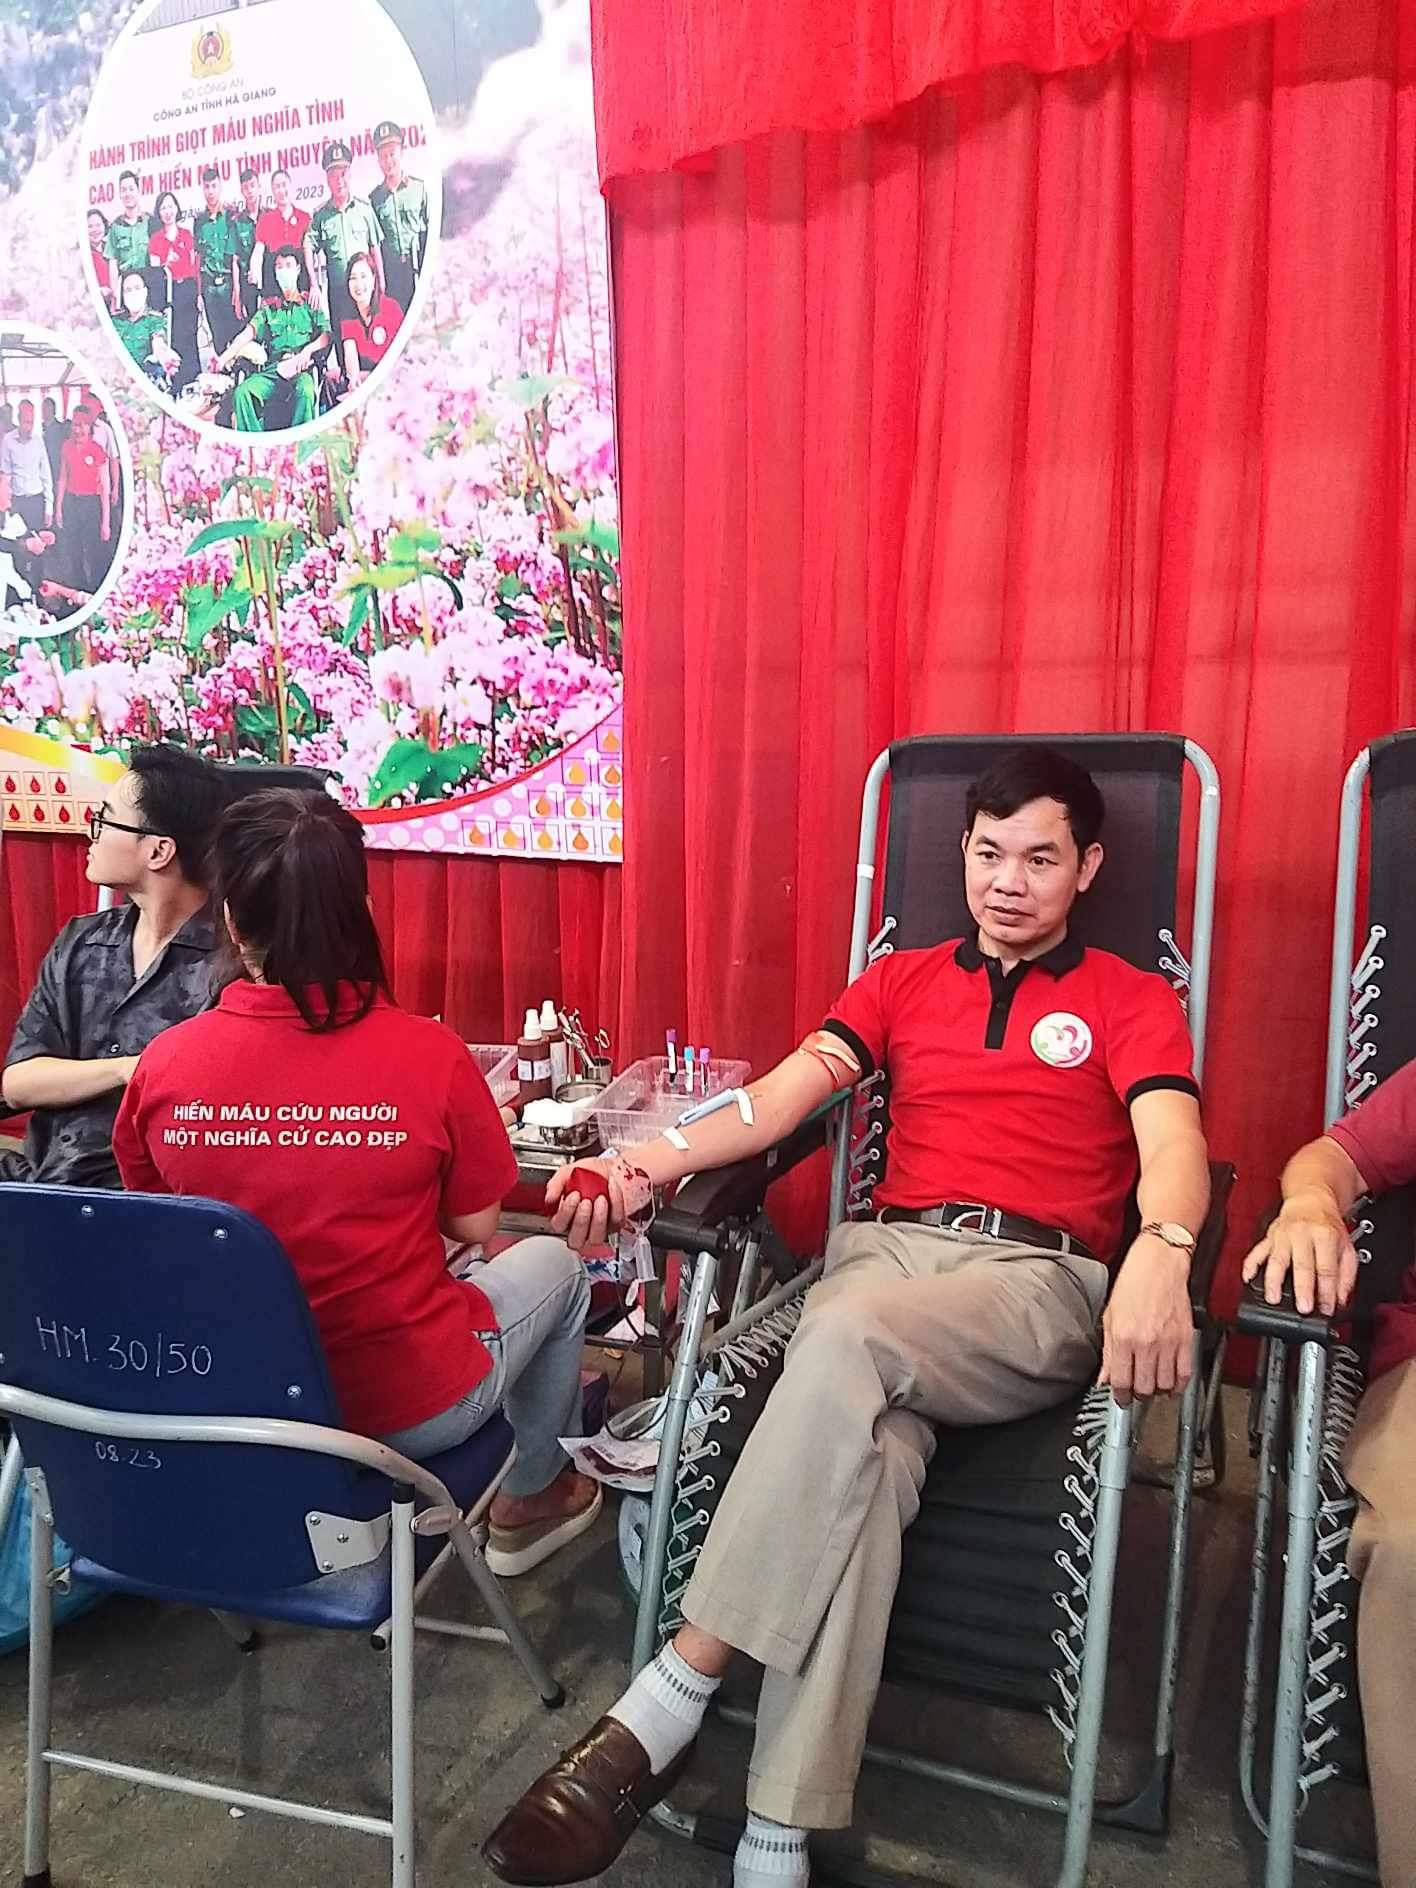 Phường Minh Khai tích cực tham gia hiến máu nhân đạo hưởng ứng ngày toàn dân hiến máu tình nguyện